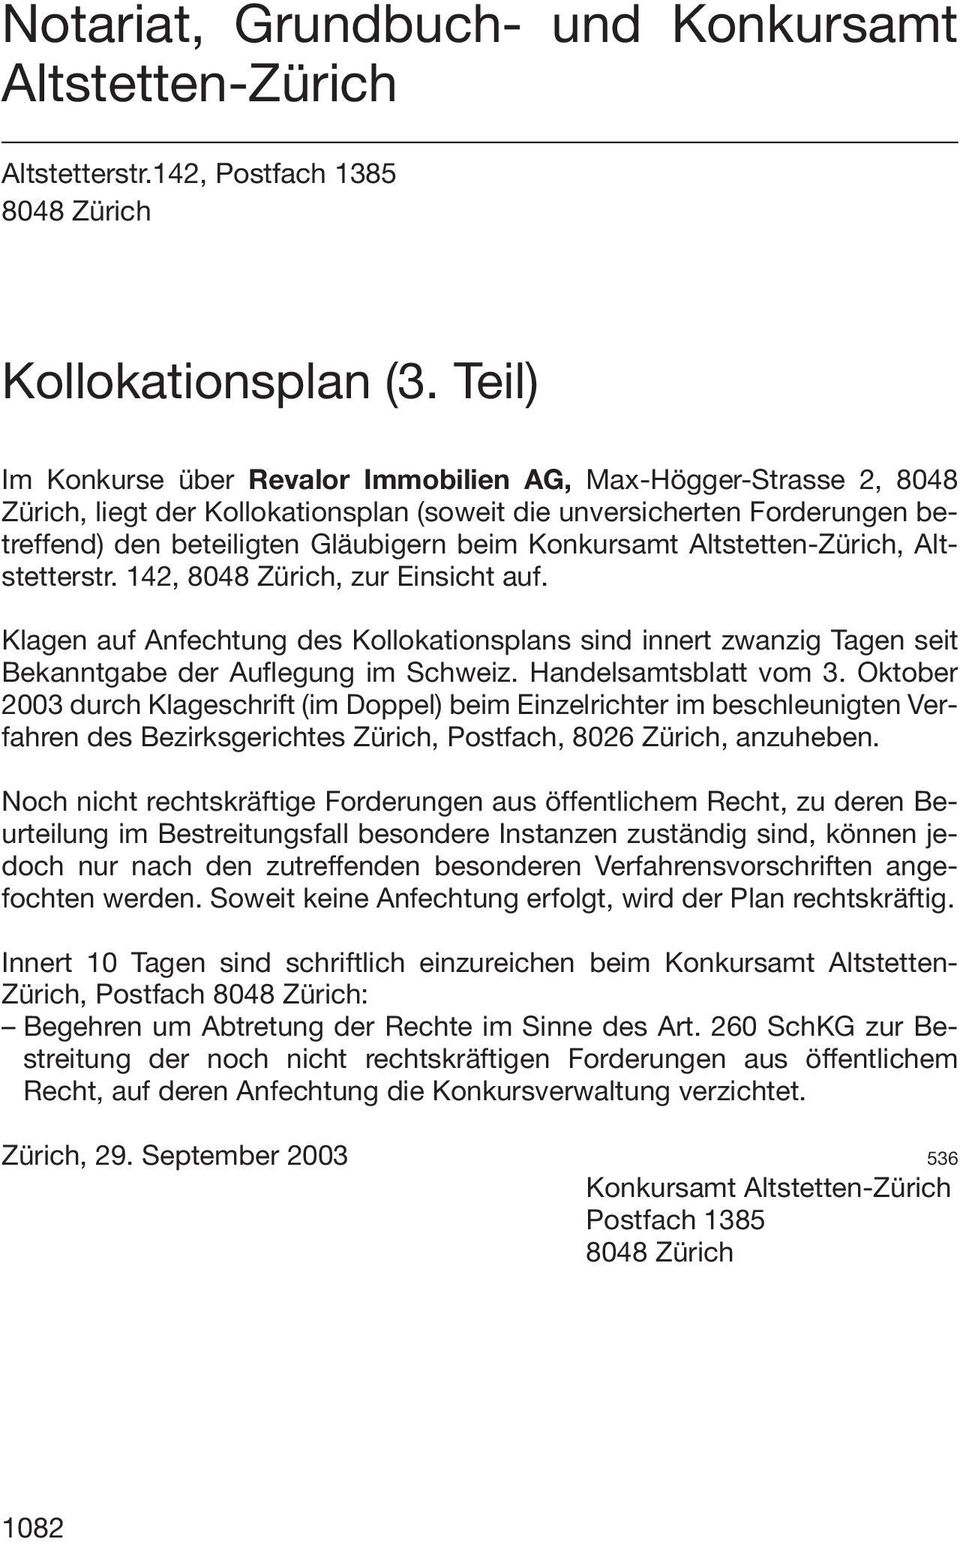 Konkursamt Altstetten-Zürich, Altstetterstr. 142, 8048 Zürich, zur Einsicht auf. Klagen auf Anfechtung des Kollokationsplans sind innert zwanzig Tagen seit Bekanntgabe der Auflegung im Schweiz.